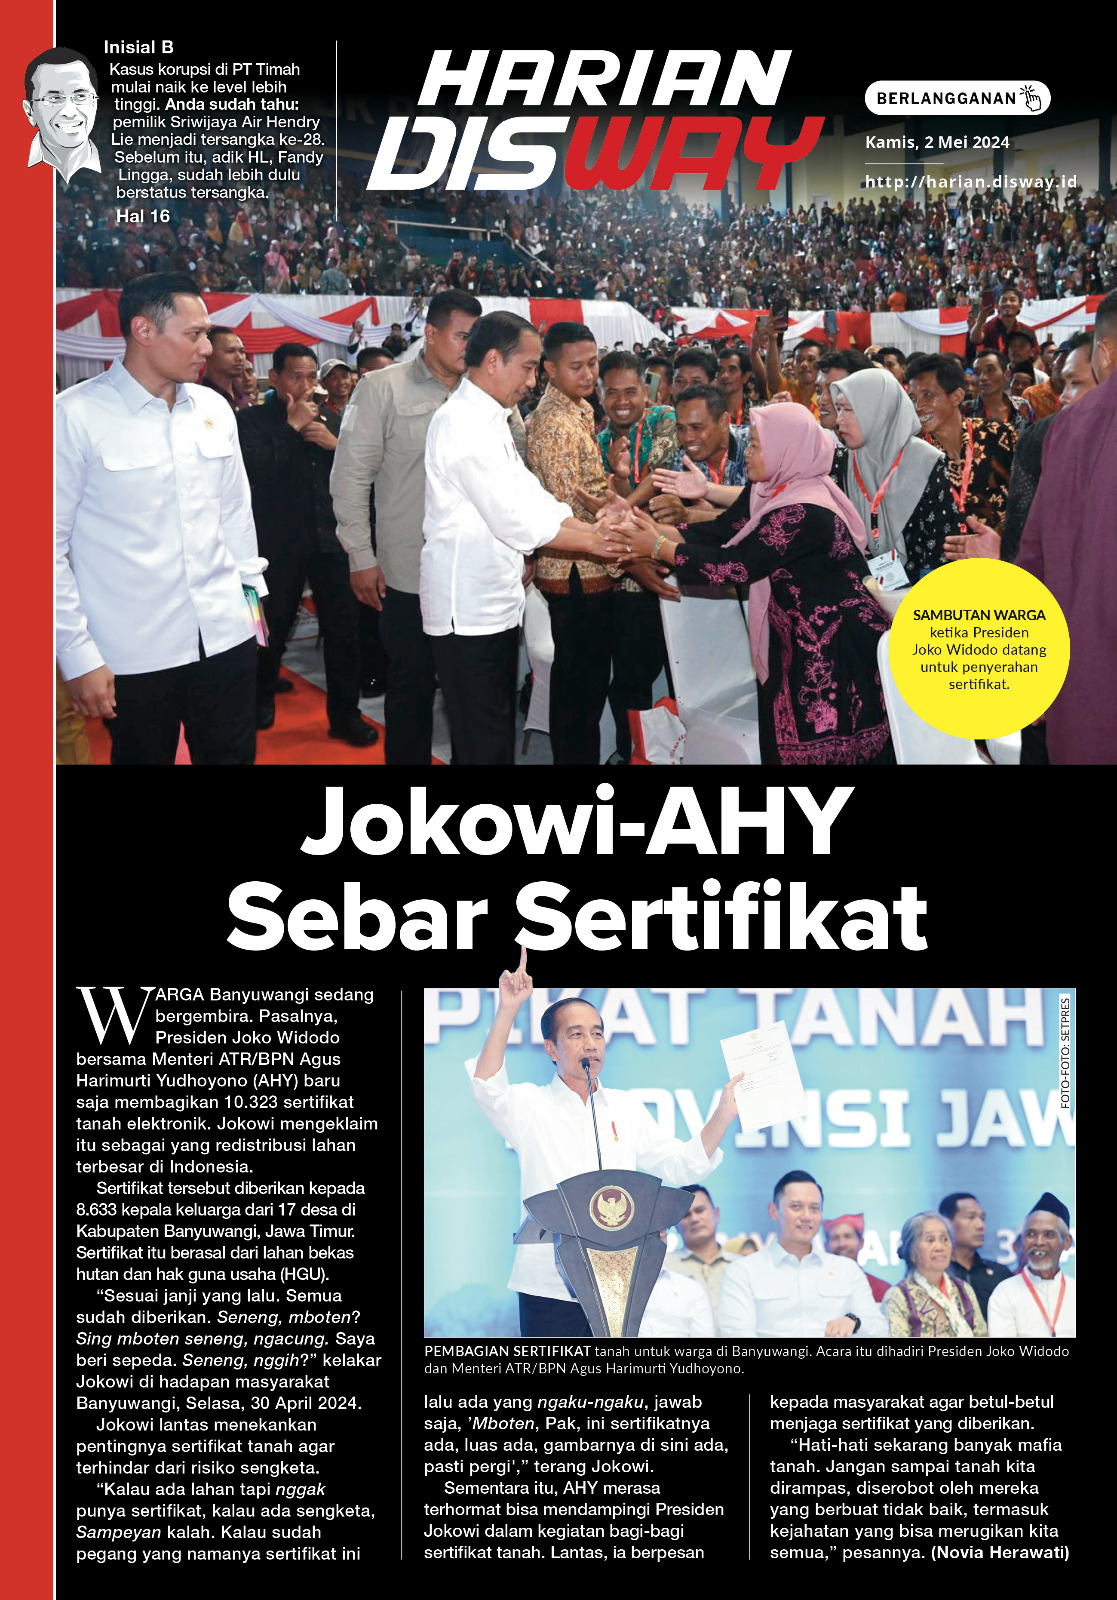 Jokowi-AHY Sebar Sertifikat